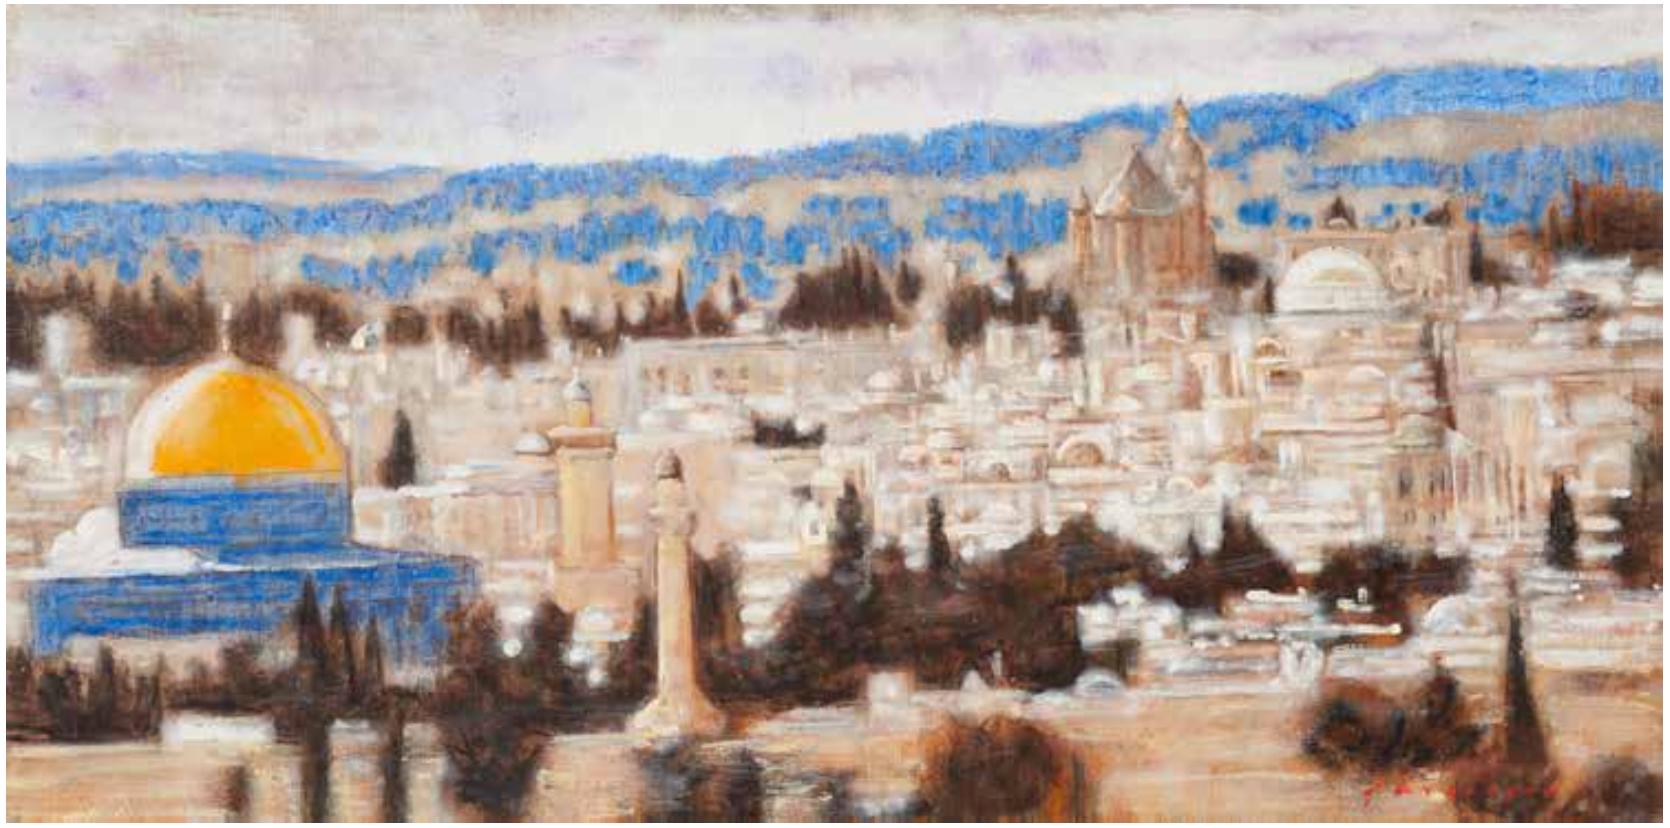 Unique oil on Burlap painting by Alexander Evgrafov
Title : Jerusalem